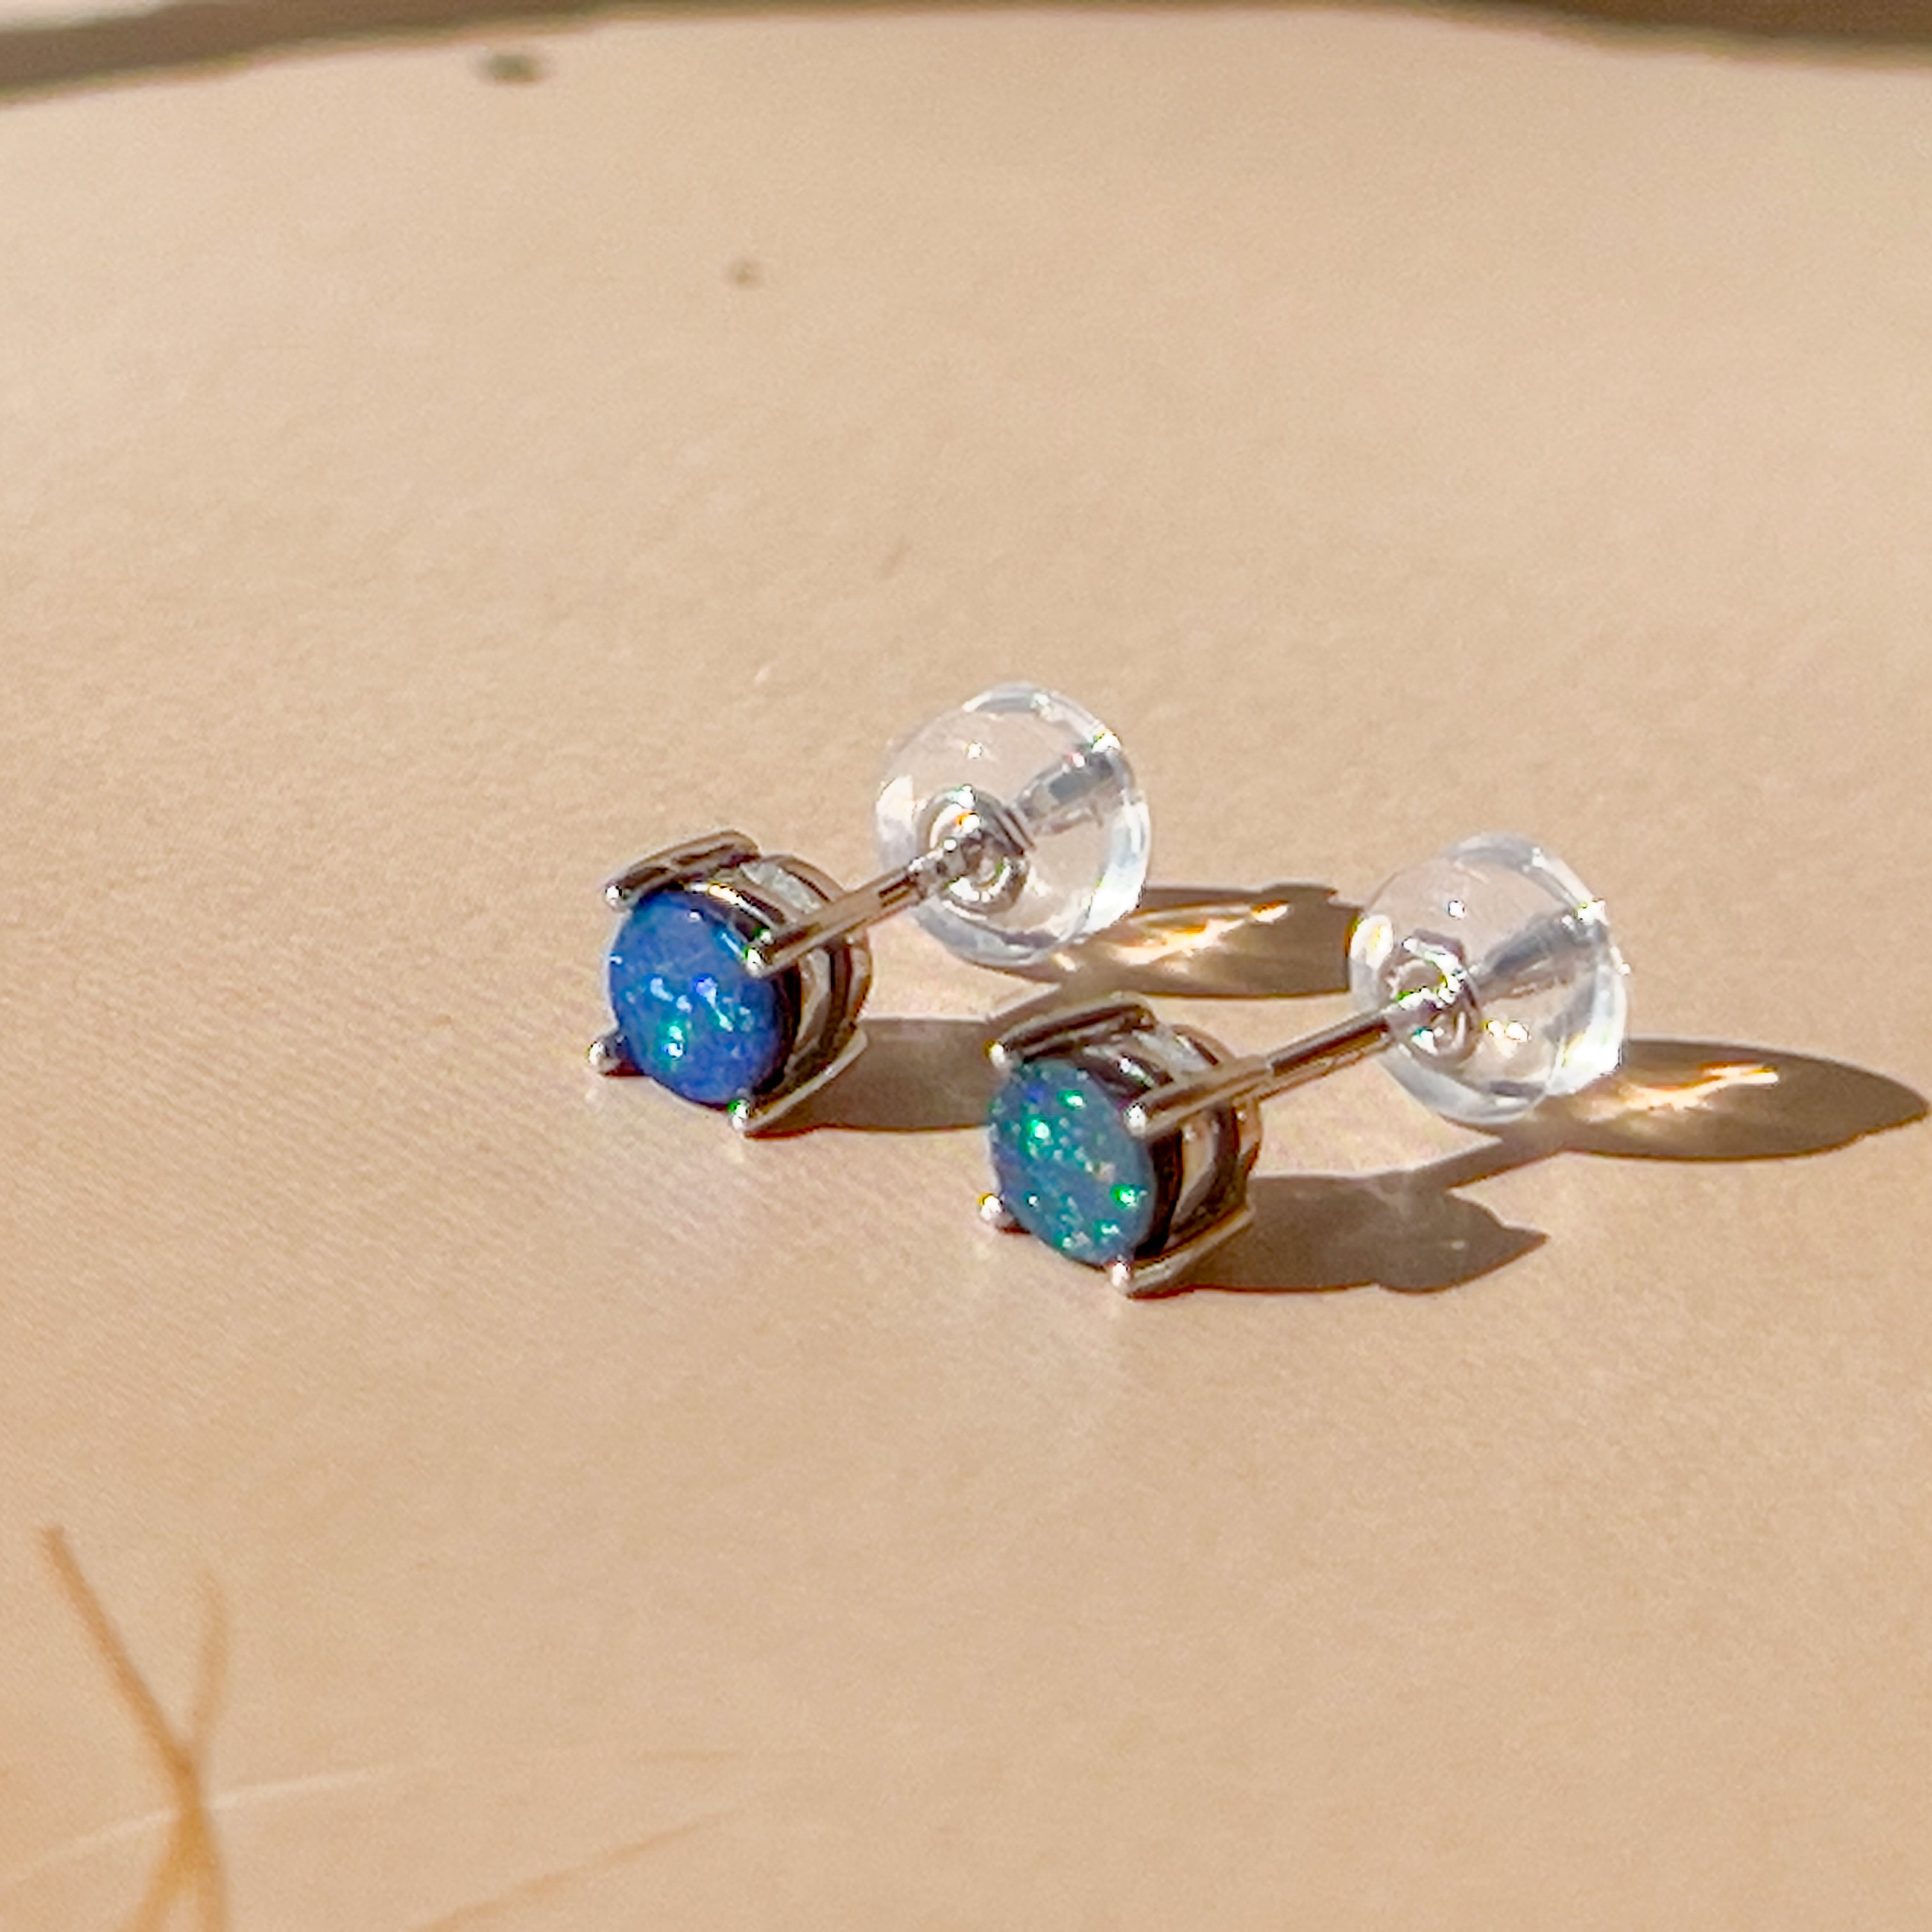 9kt White Gold pair of 4mm Doublet Opal earrings 4 claw studs - Masterpiece Jewellery Opal & Gems Sydney Australia | Online Shop